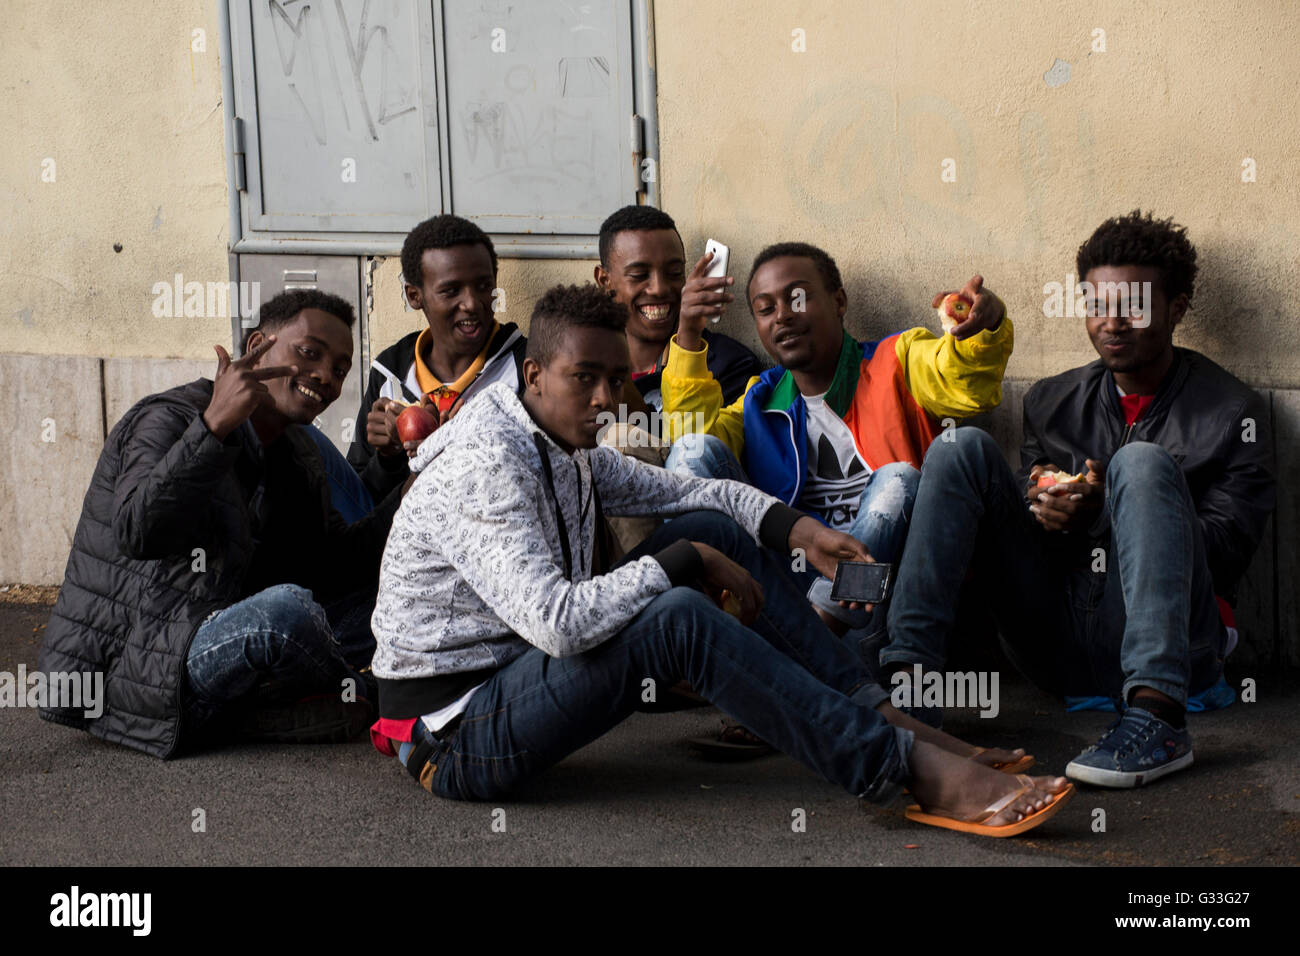 Des centaines de migrants, dont beaucoup viennent de l'Ethiopie, la Somalie et l'Érythrée, est arrivé dans les dernières semaines sur les bateaux en Italie en provenance de Libye Banque D'Images